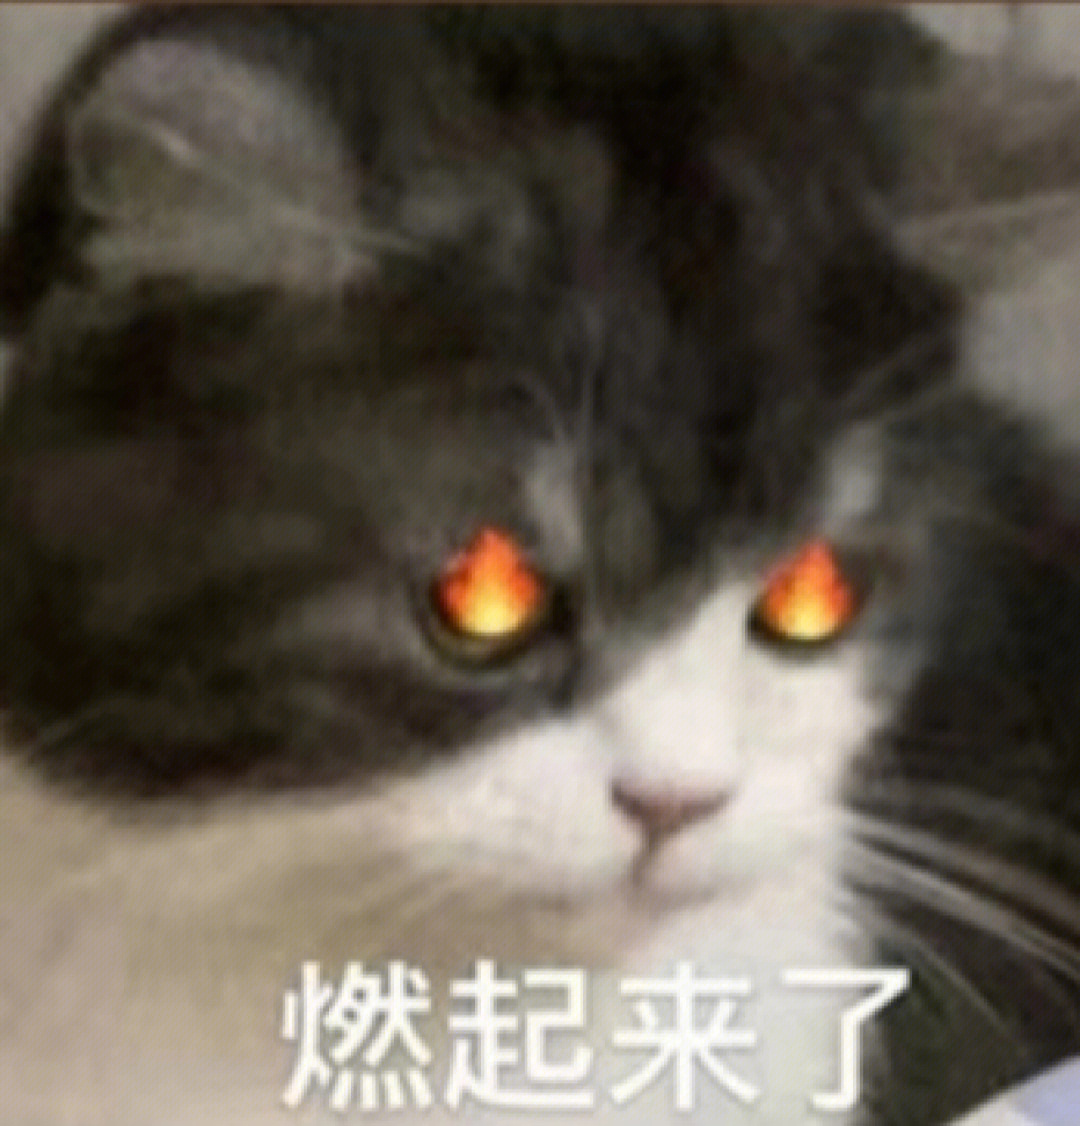 猫表情包cnm燃起来了图片